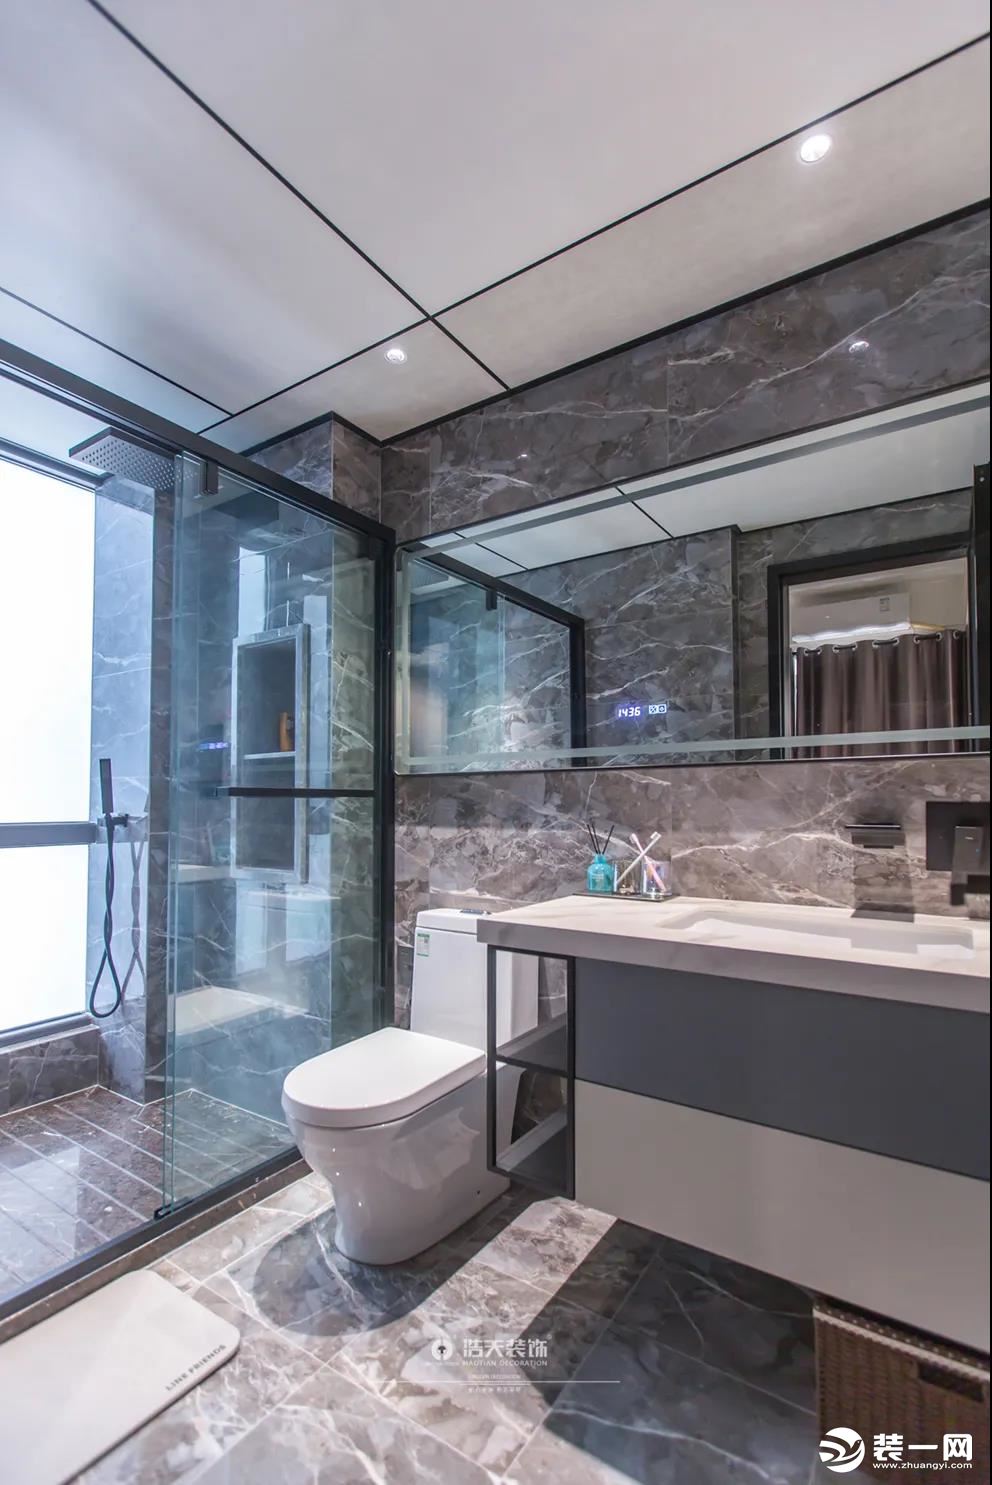 卫生间采用干湿分离的设计，使整个空间的层次非常分明，黑白灰营造出静谧雅致的氛围，与整体设计协调呼应。